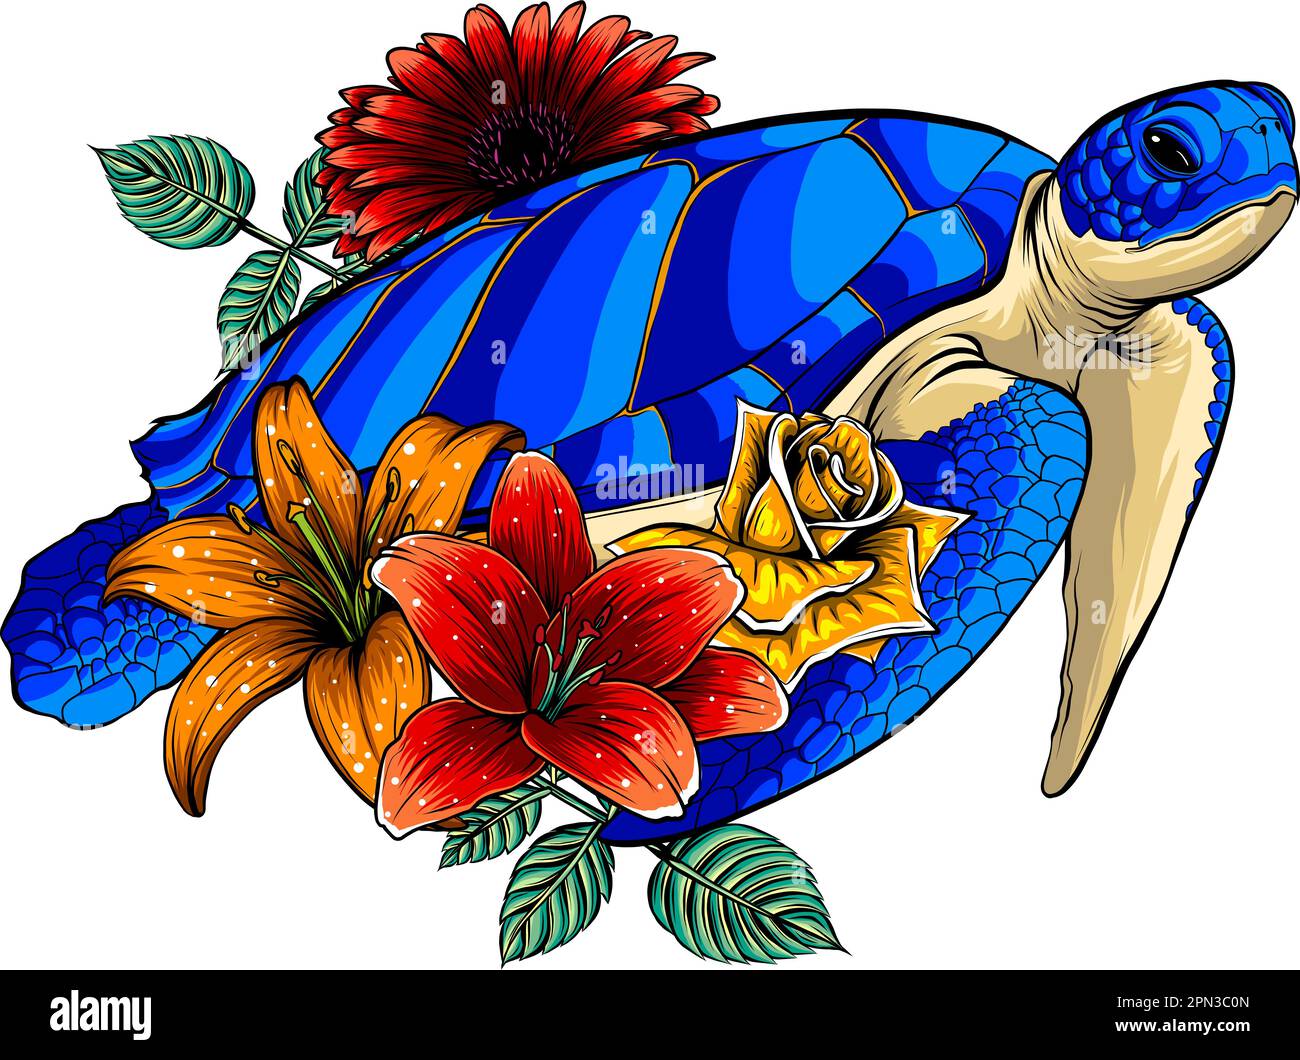 Illustrazione vettoriale di tartaruga marina con fiore su sfondo bianco Illustrazione Vettoriale